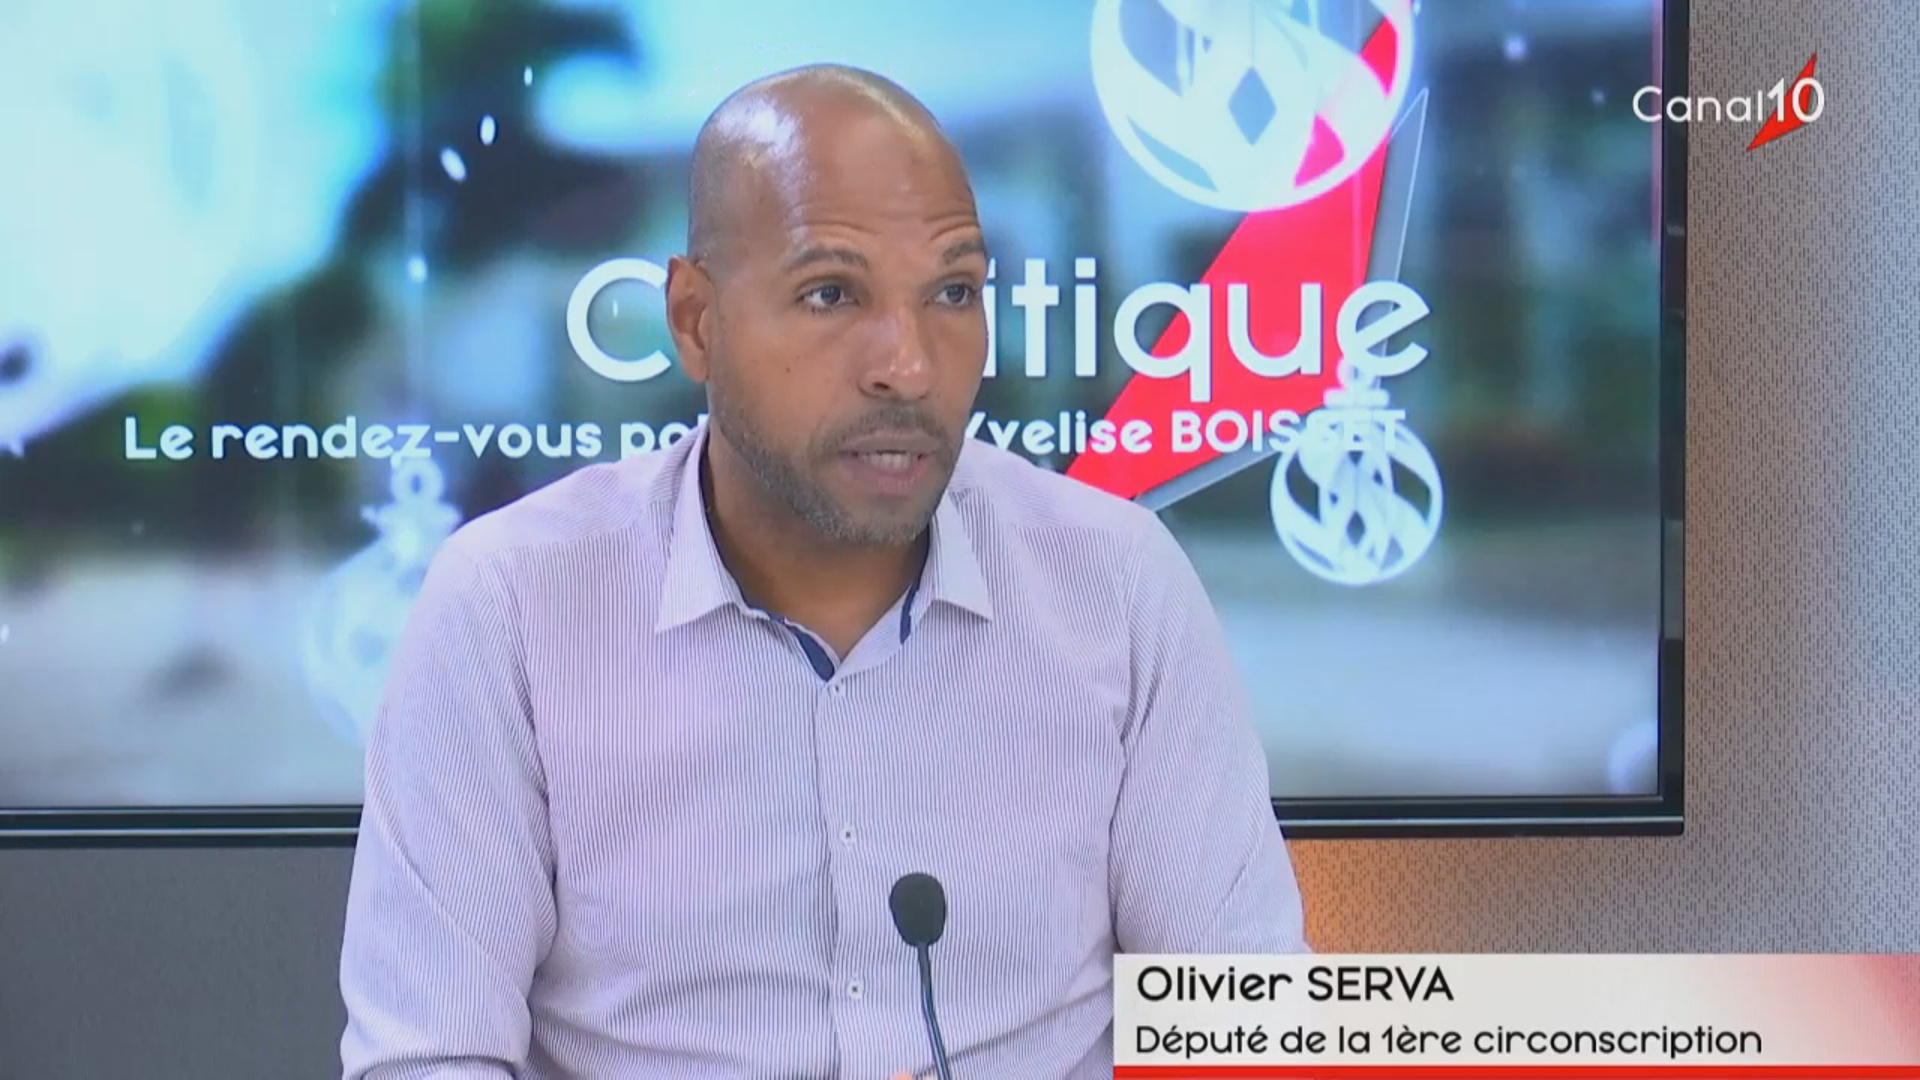 [Vidéo] Olivier SERVA Député de Guadeloupe. Invité de C politique Canal 10